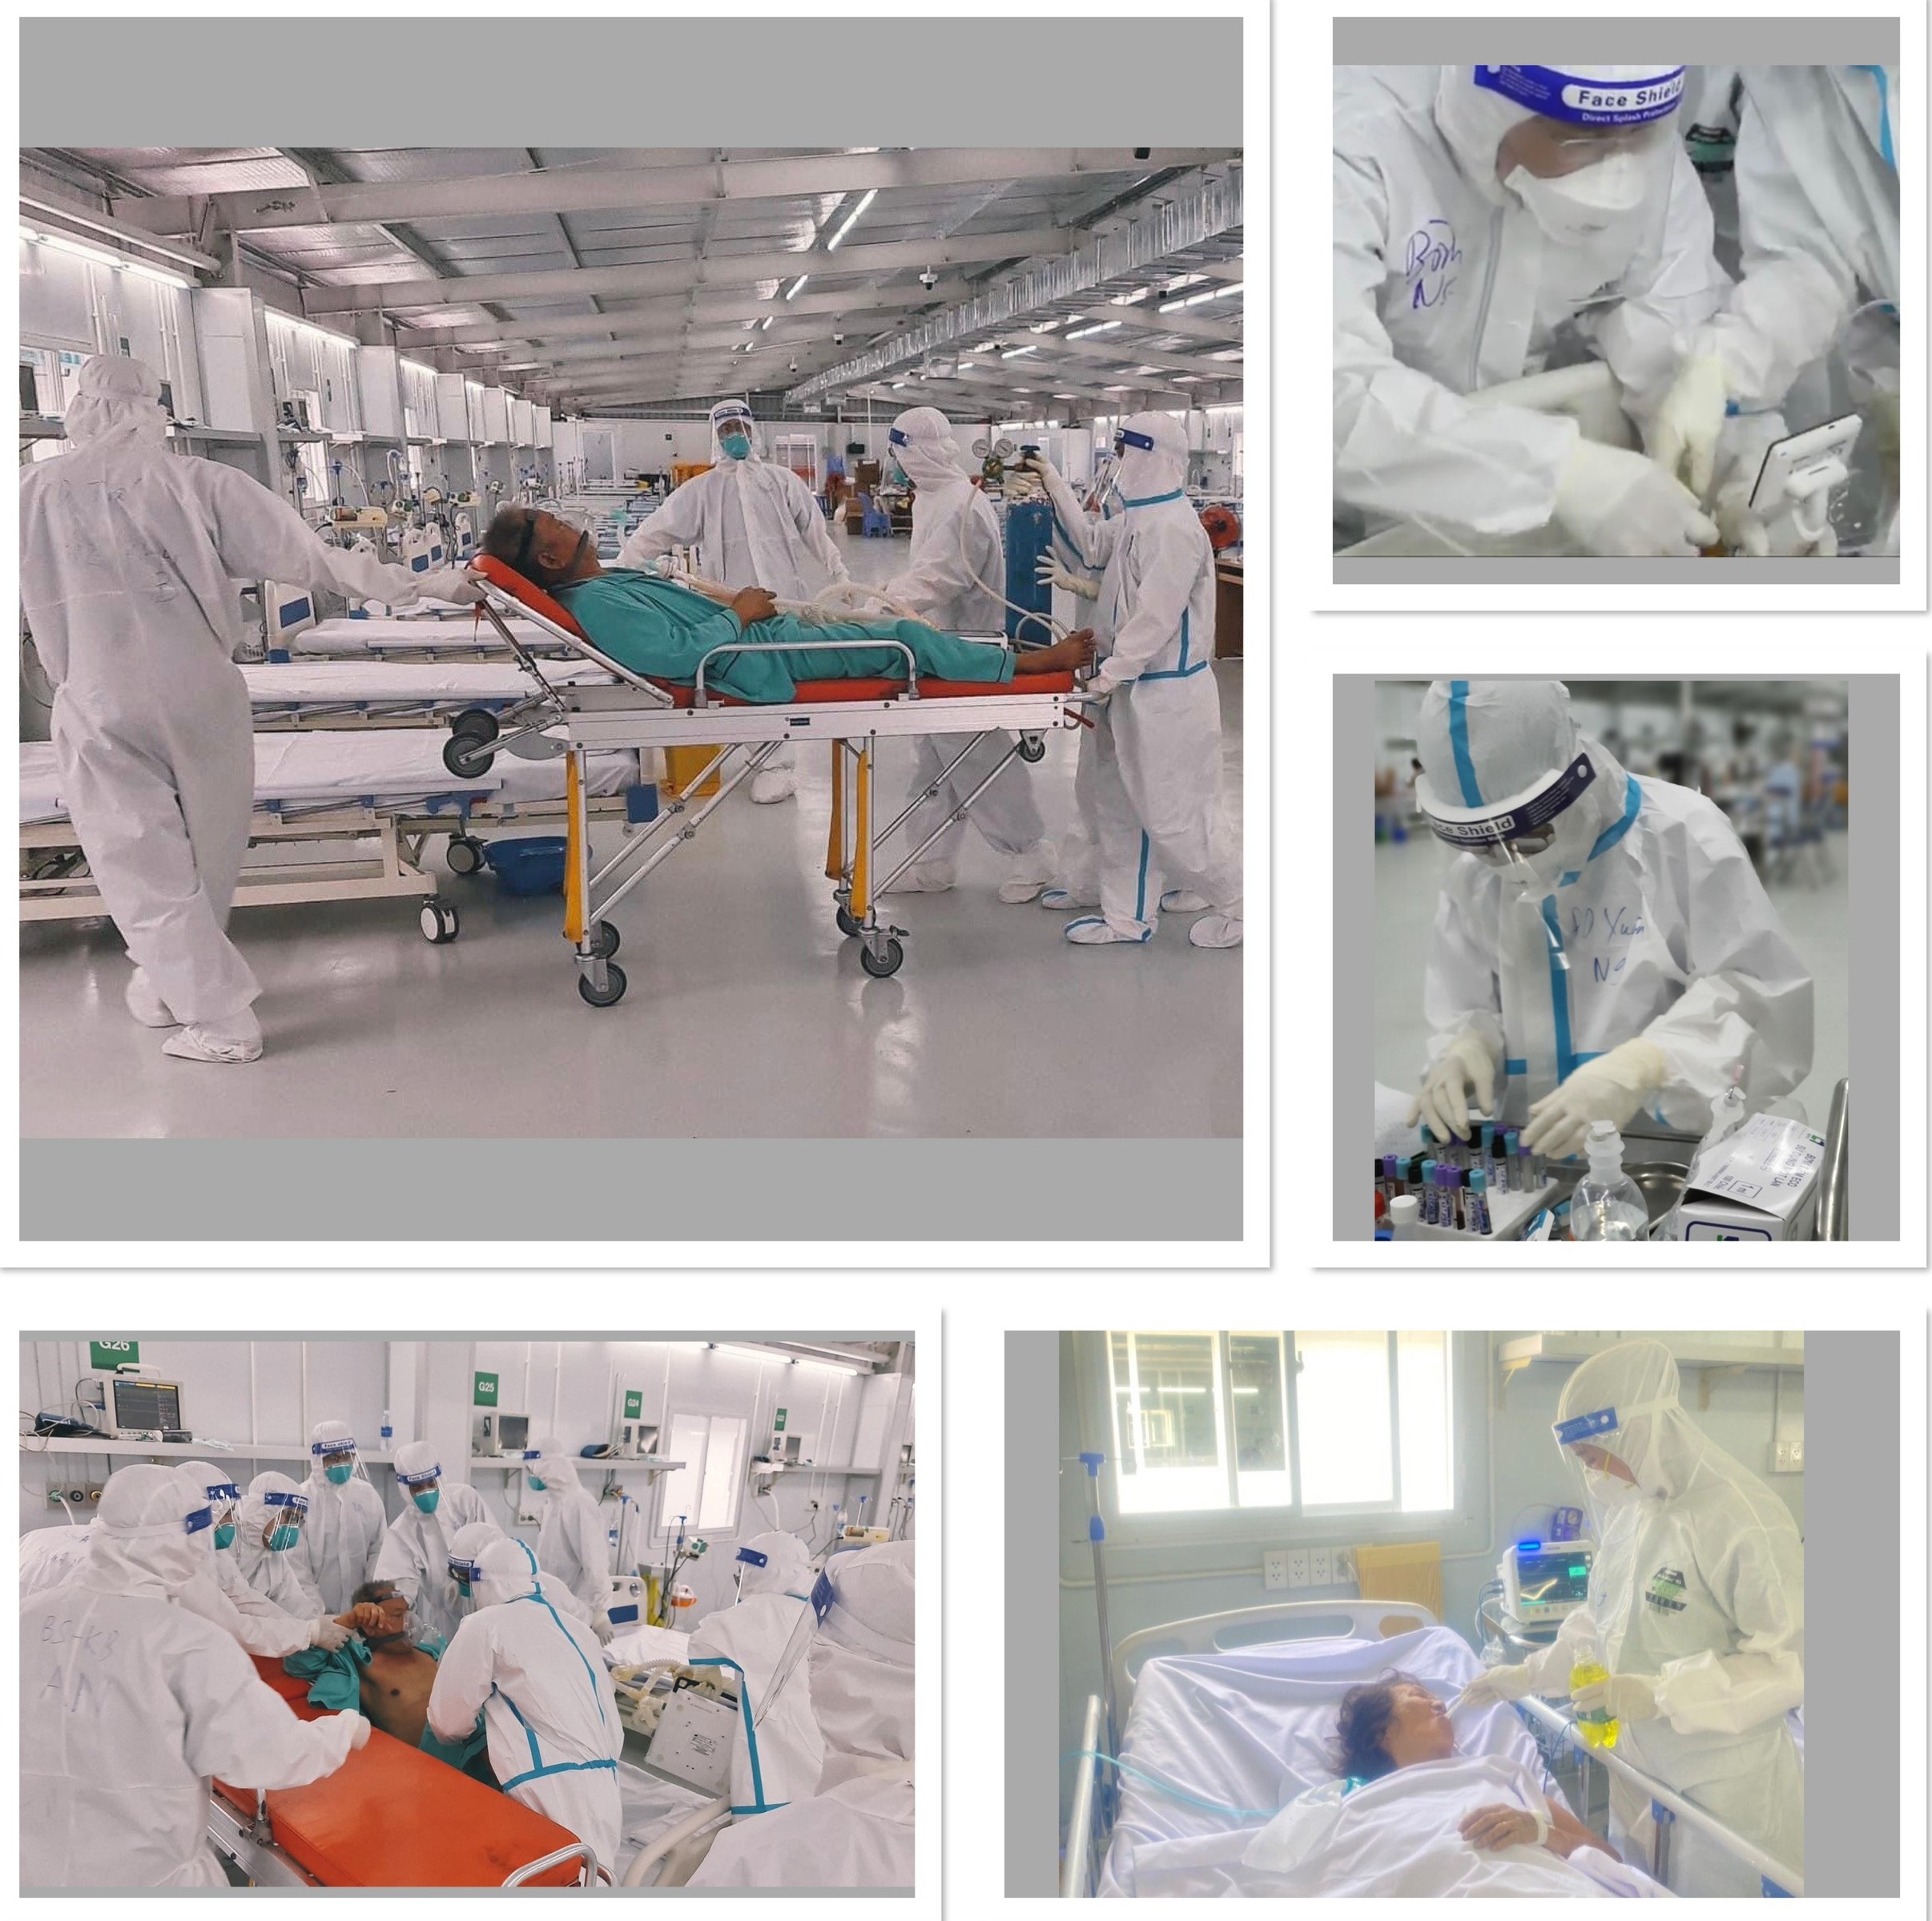 : Đoàn y bác sĩ tình nguyện BVBĐ tham gia điều trị, chăm sóc, hỗ trợ người bệnh nặng và rất nặng tại Trung tâm Hồi sức tích cực người bệnh COVI-19 Bệnh viện Dã chiến số 13. 